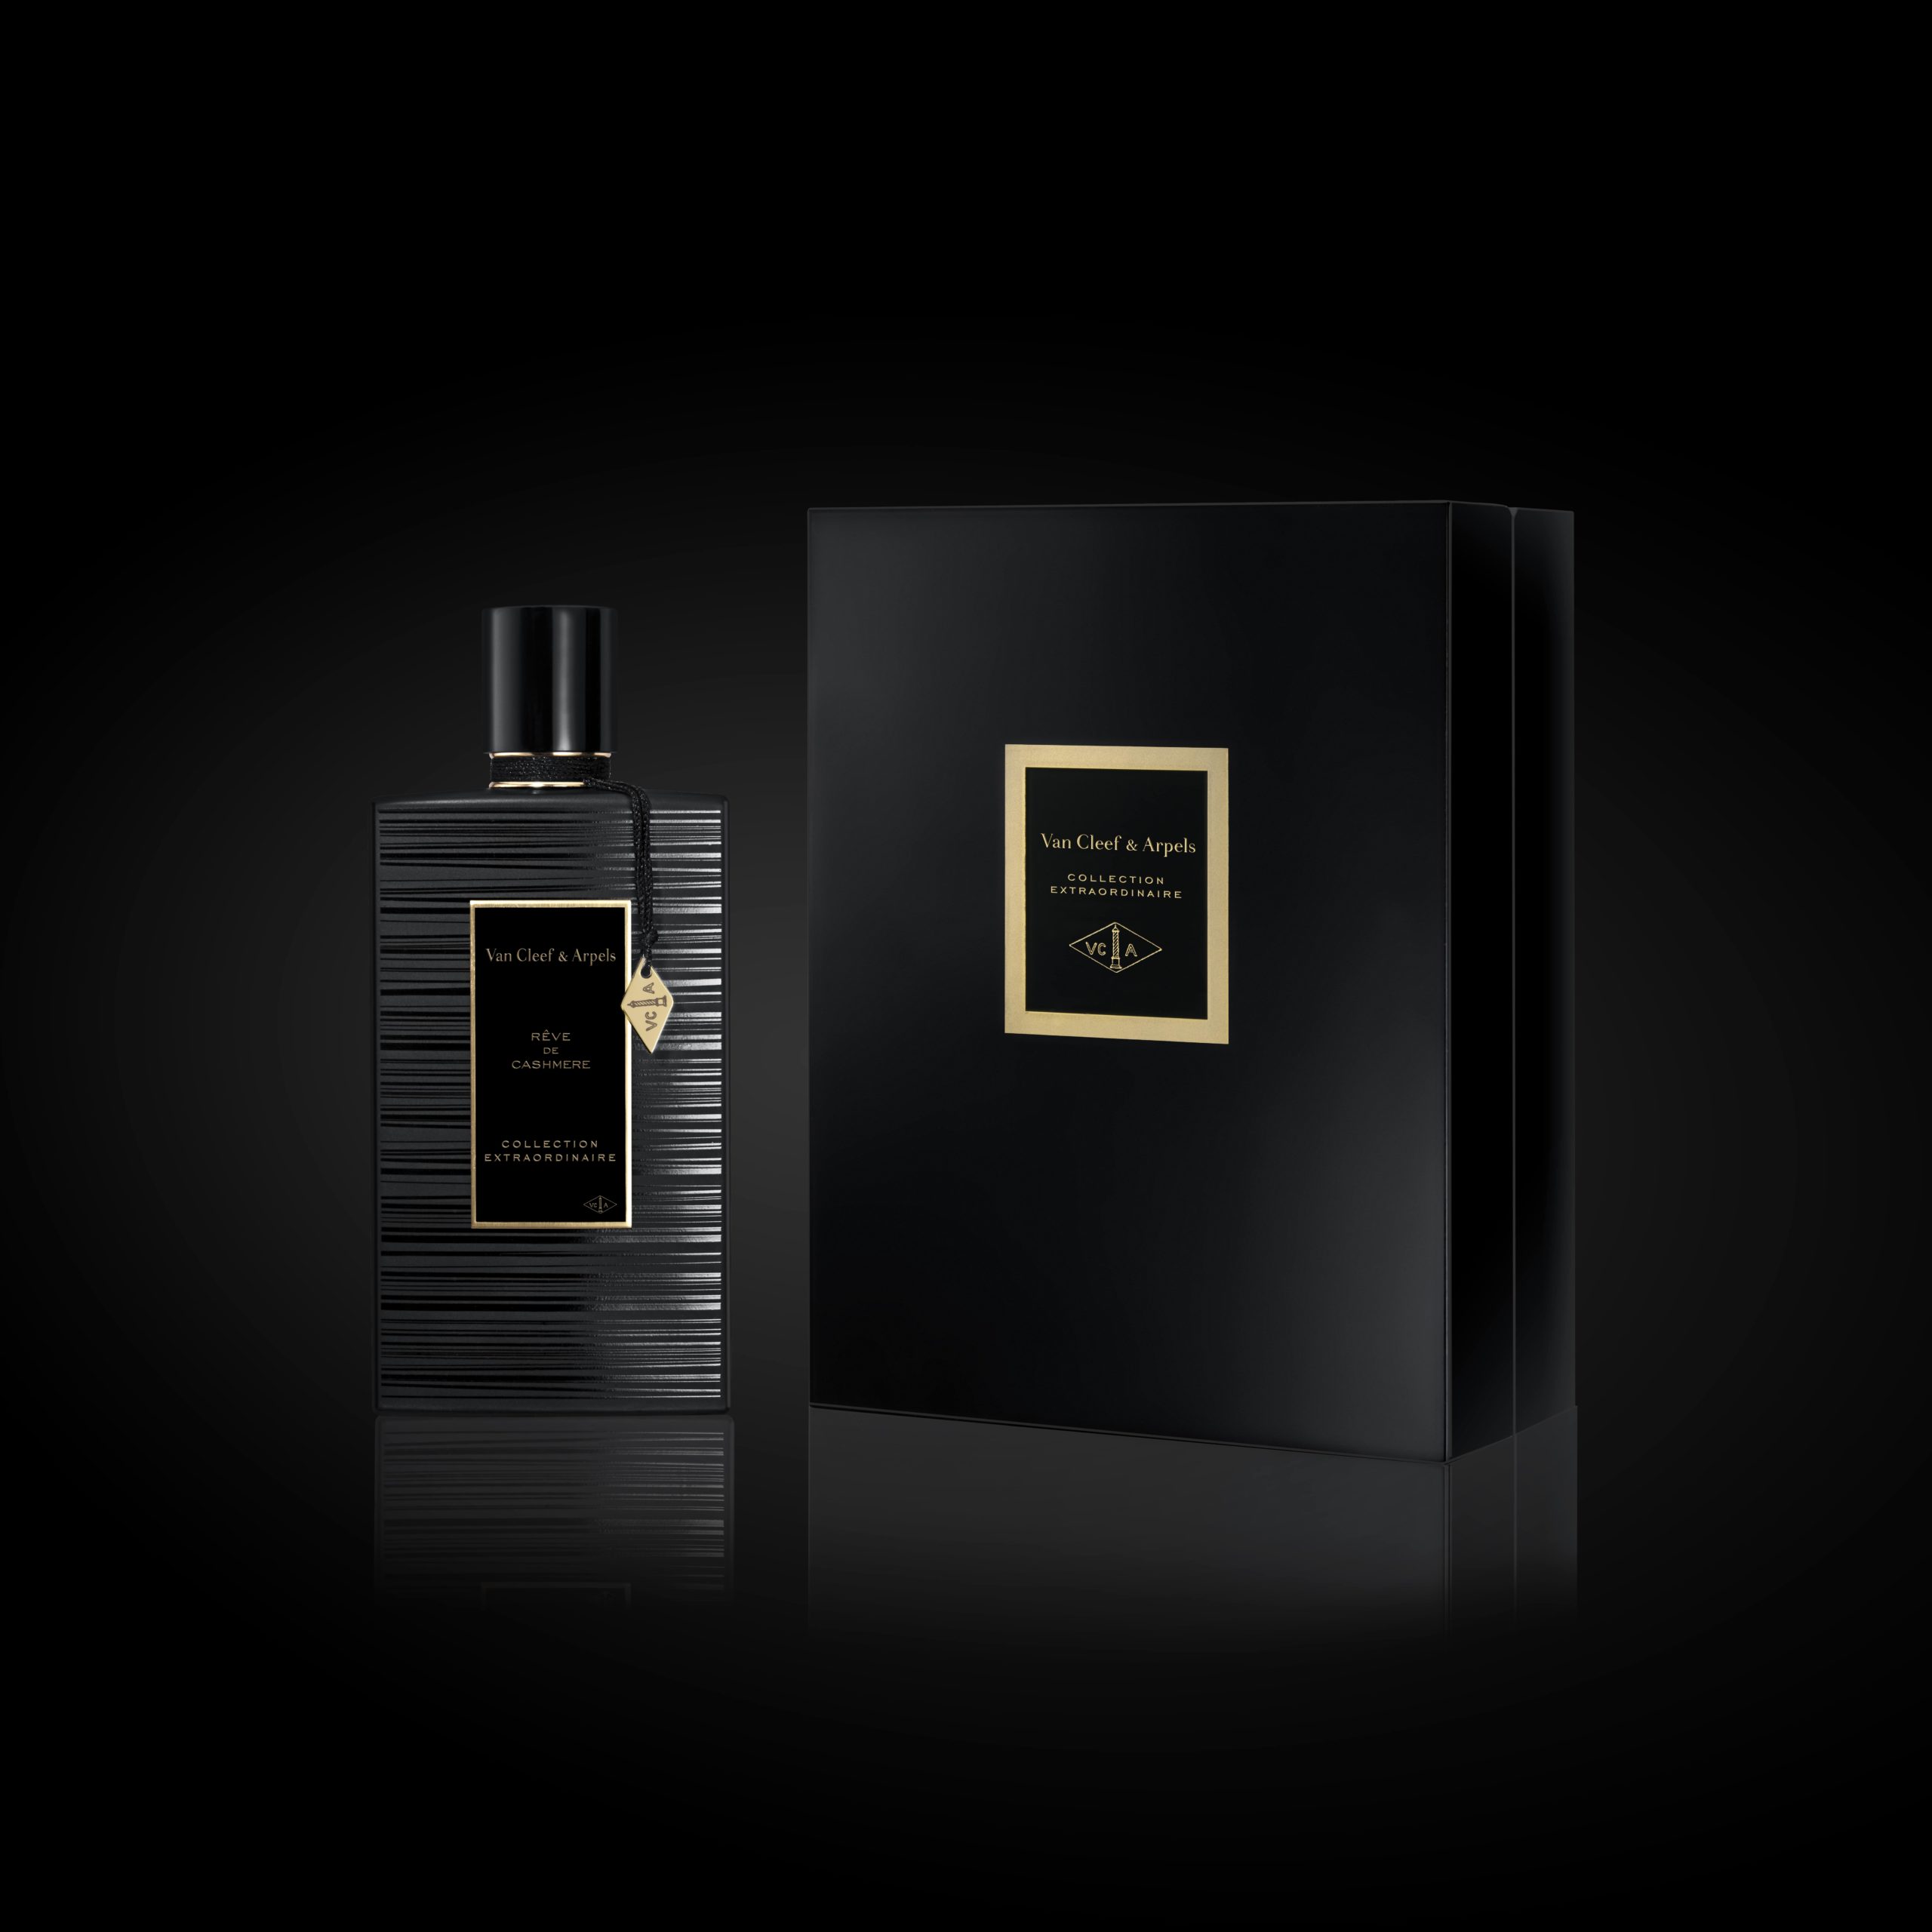 Van Cleef & Arpels Reve d'Encens Perfume Samples